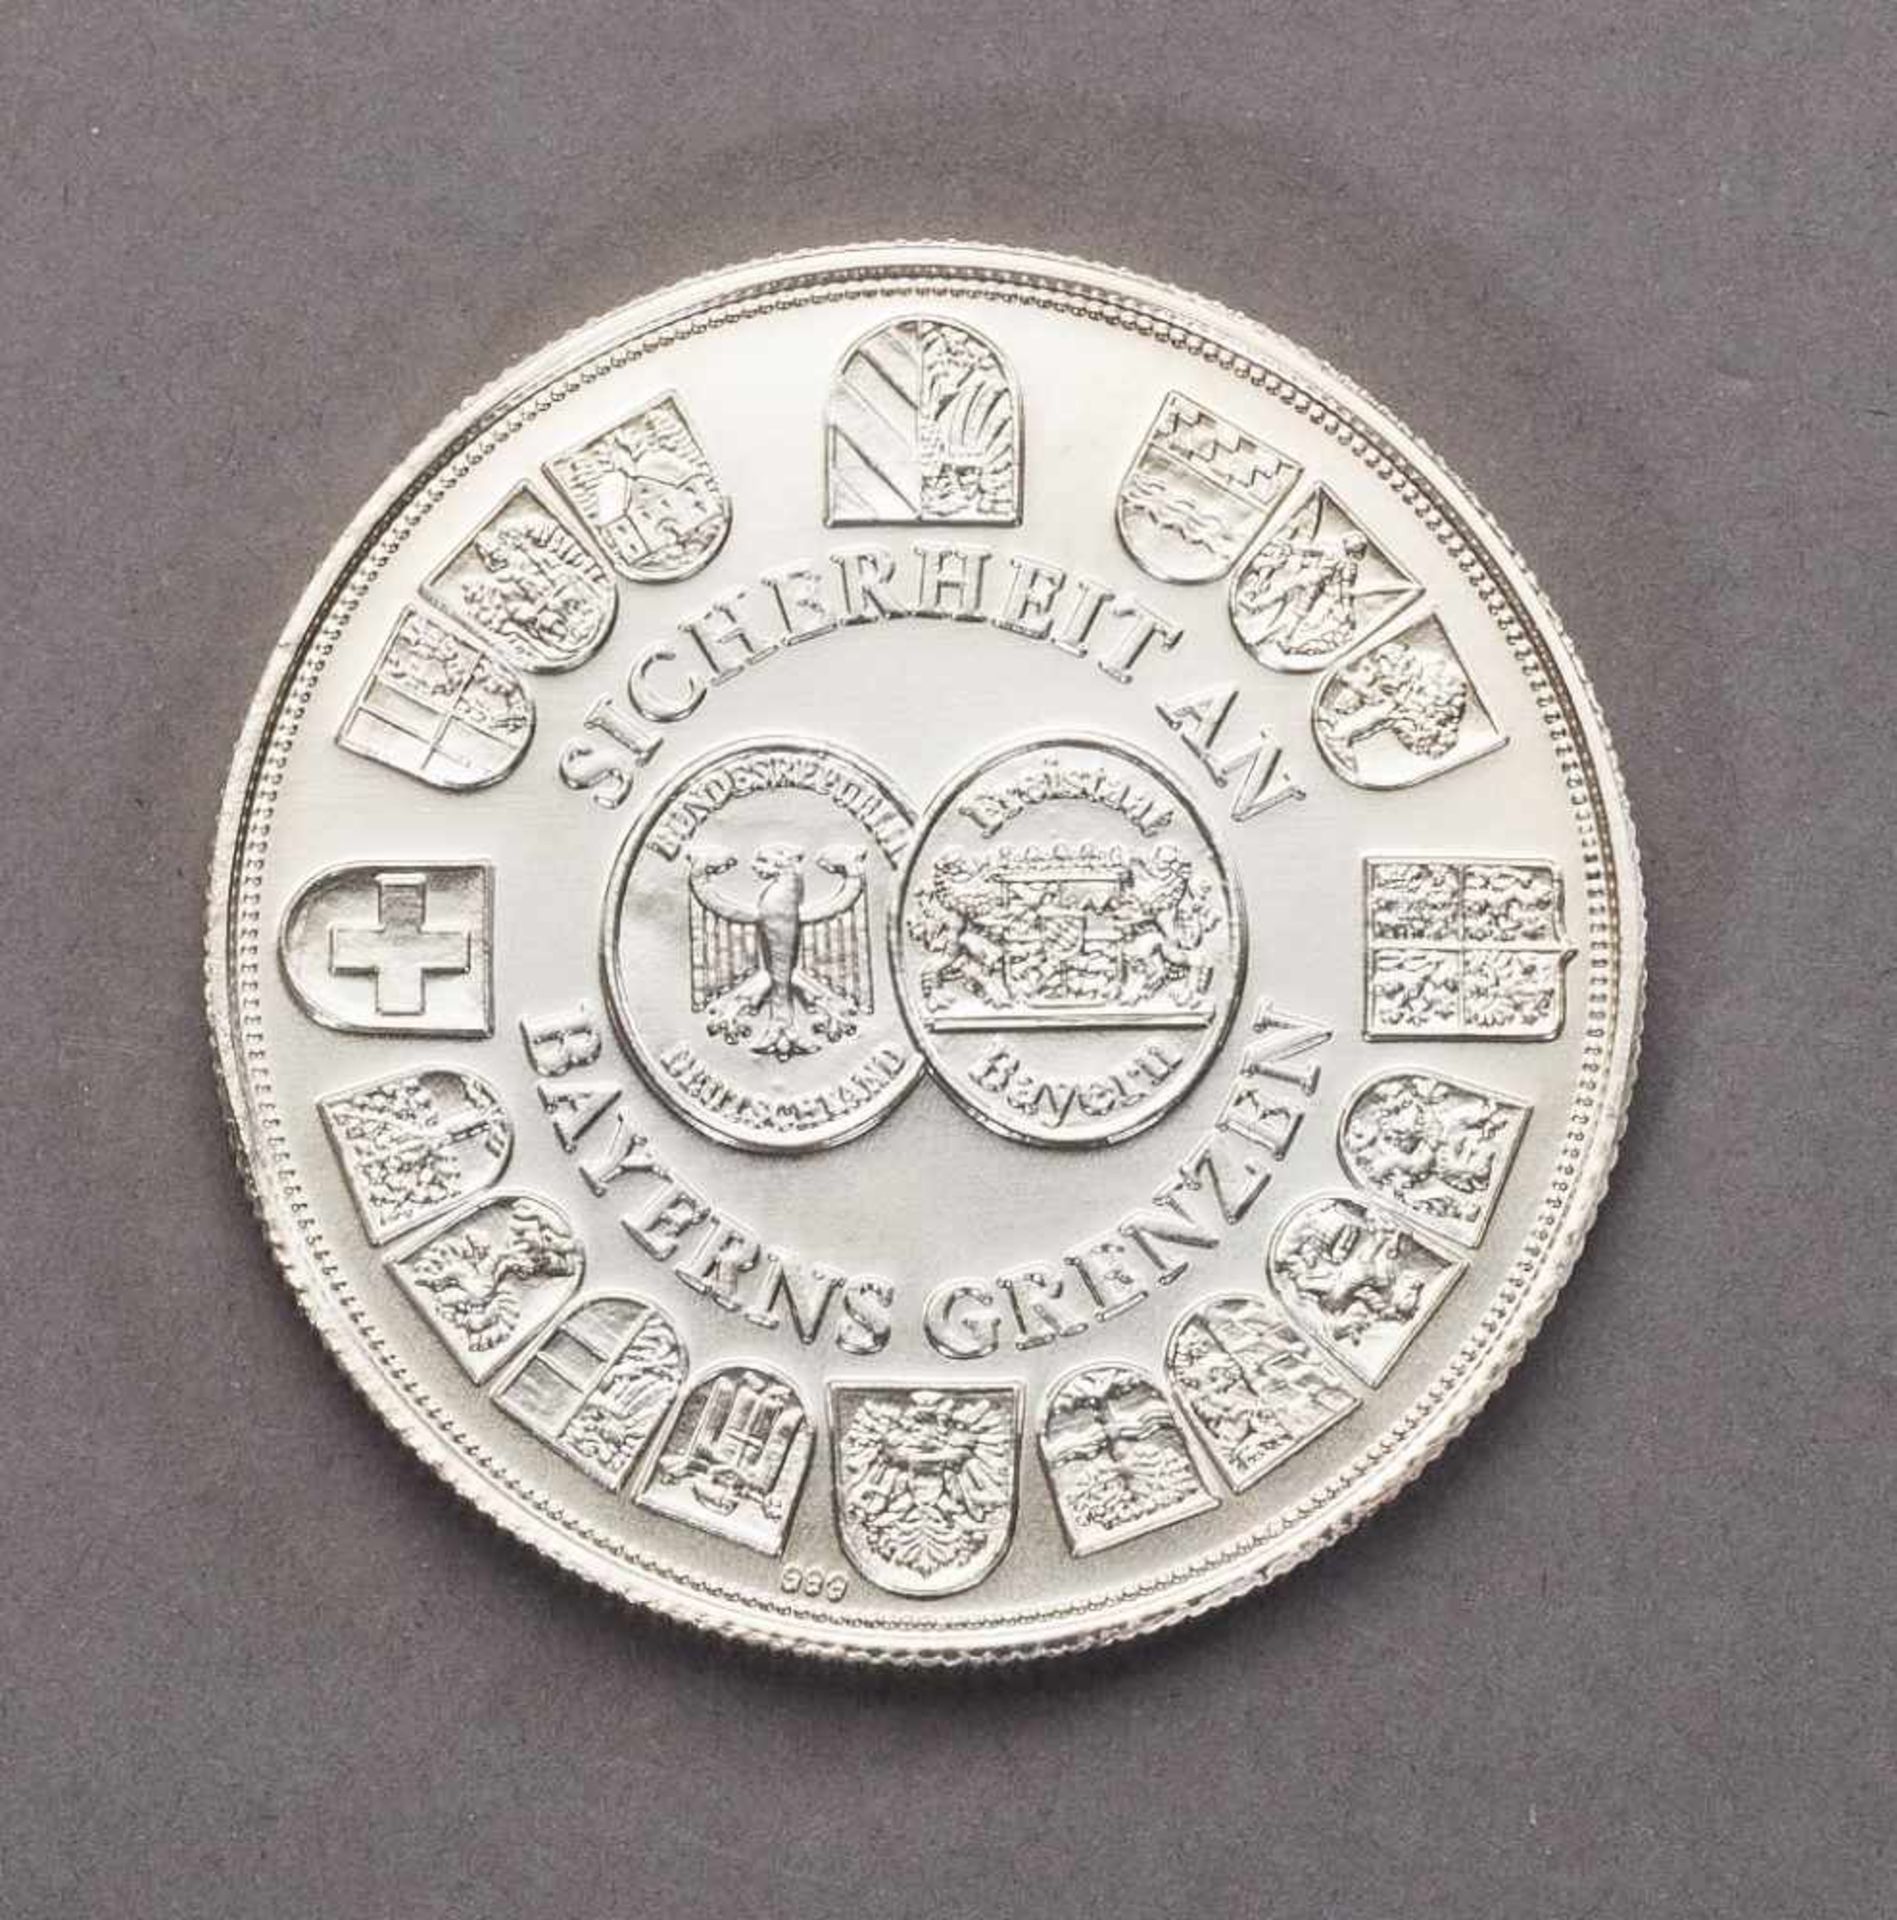 Silbermedaille 50 Jahre Bayerische Grenzpolizei 1946 - 1999. - Bild 2 aus 2